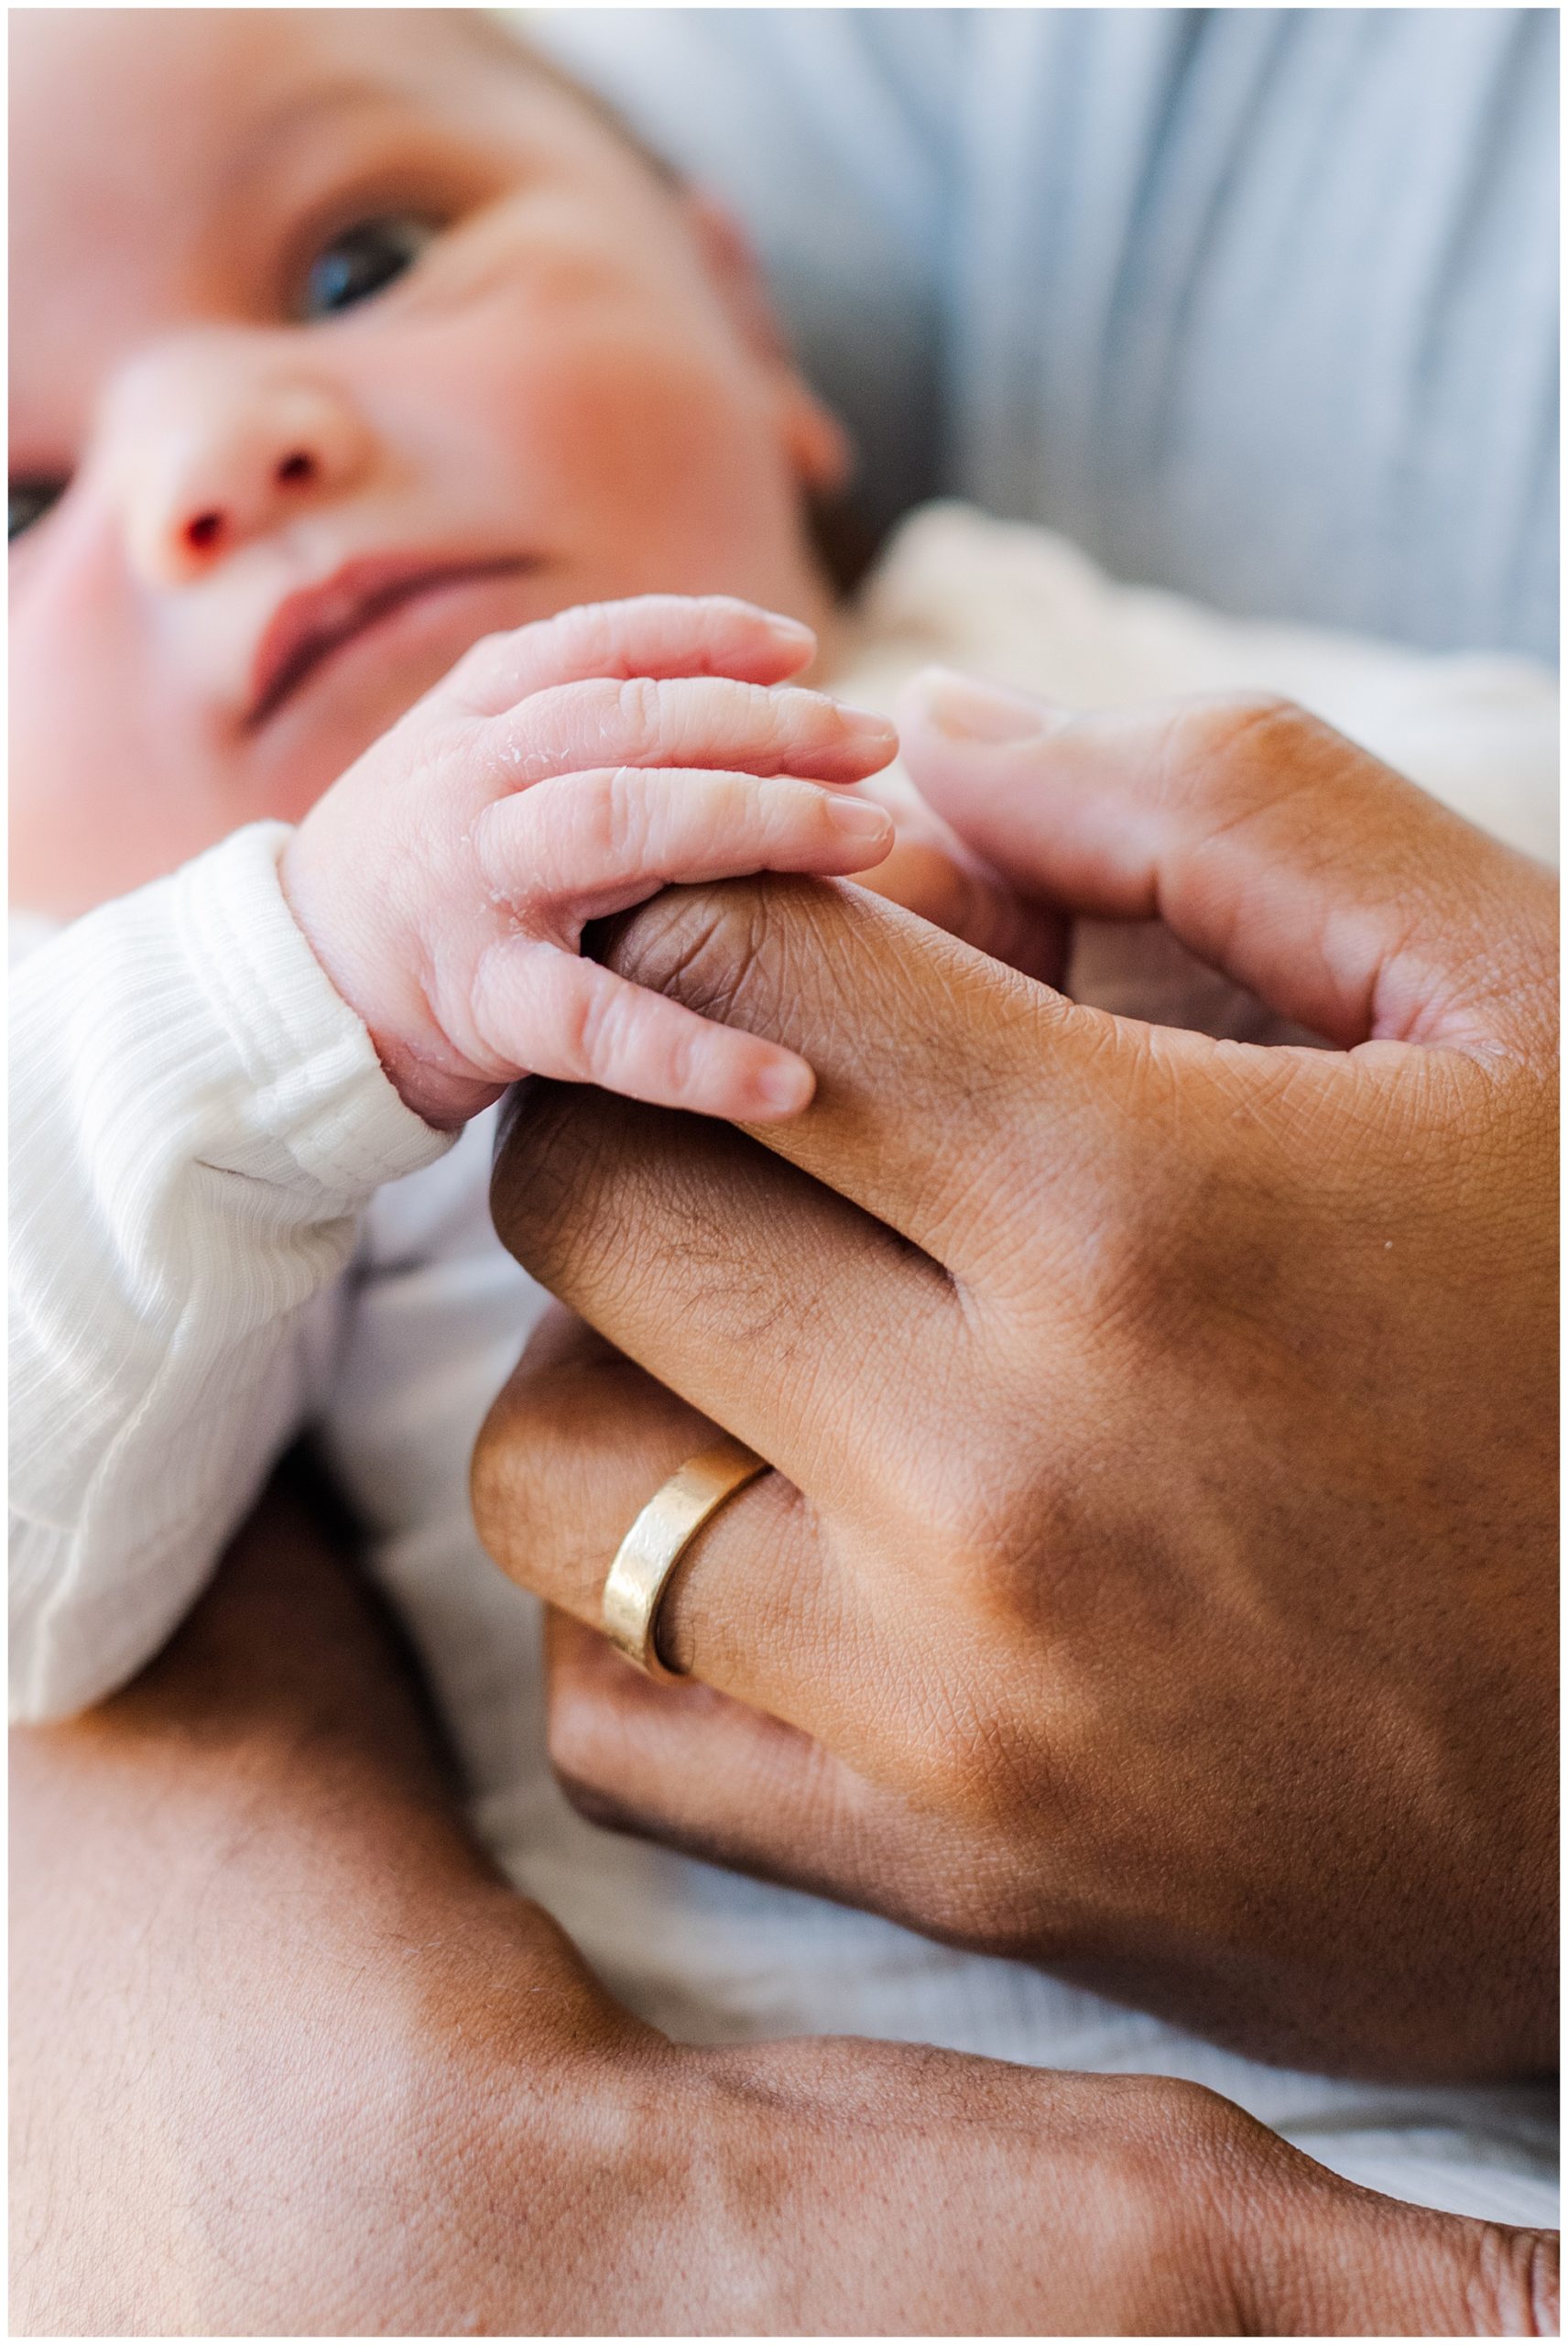 Newborn hand details